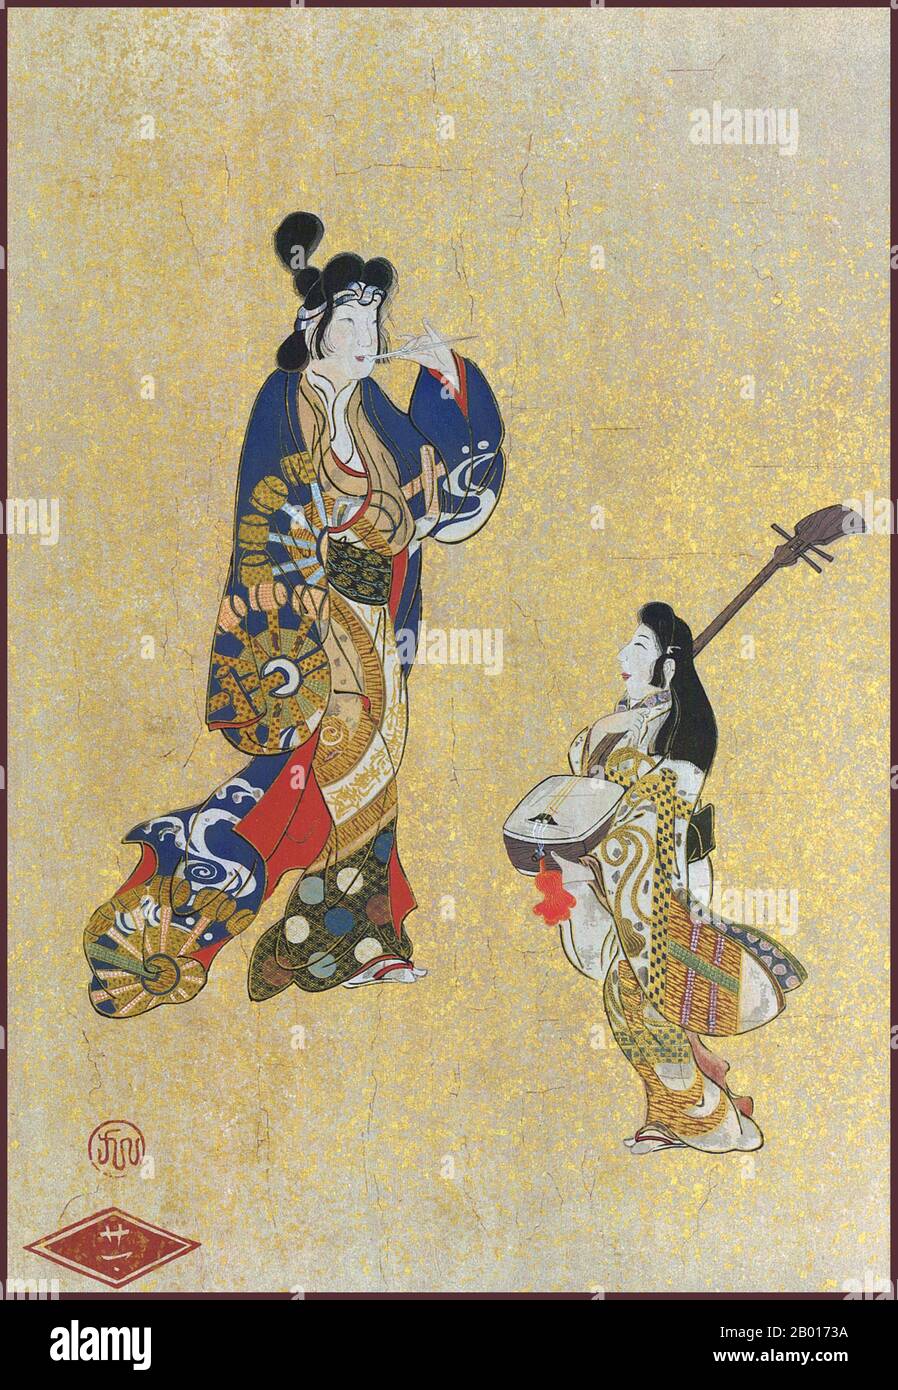 Japon: 'Une Dame et un musicien'.Décoration à suspendre, XVIIe siècle.Yamato-e est un style de peinture japonaise inspiré des peintures de la dynastie Tang et développé à la fin de la période Heian.Il est considéré comme le style japonais classique.Depuis la période Muromachi (XVe siècle), le terme Yamato-e a été utilisé pour distinguer les œuvres des peintures de style chinois contemporain (kara-e), inspirées par les peintures du bouddhisme zen de la dynastie Song et Yuan.Les Yamato-e parlent souvent de thèmes narratifs avec du texte, montrent la beauté de la nature, par exemple des lieux célèbres (meisho-e). Banque D'Images